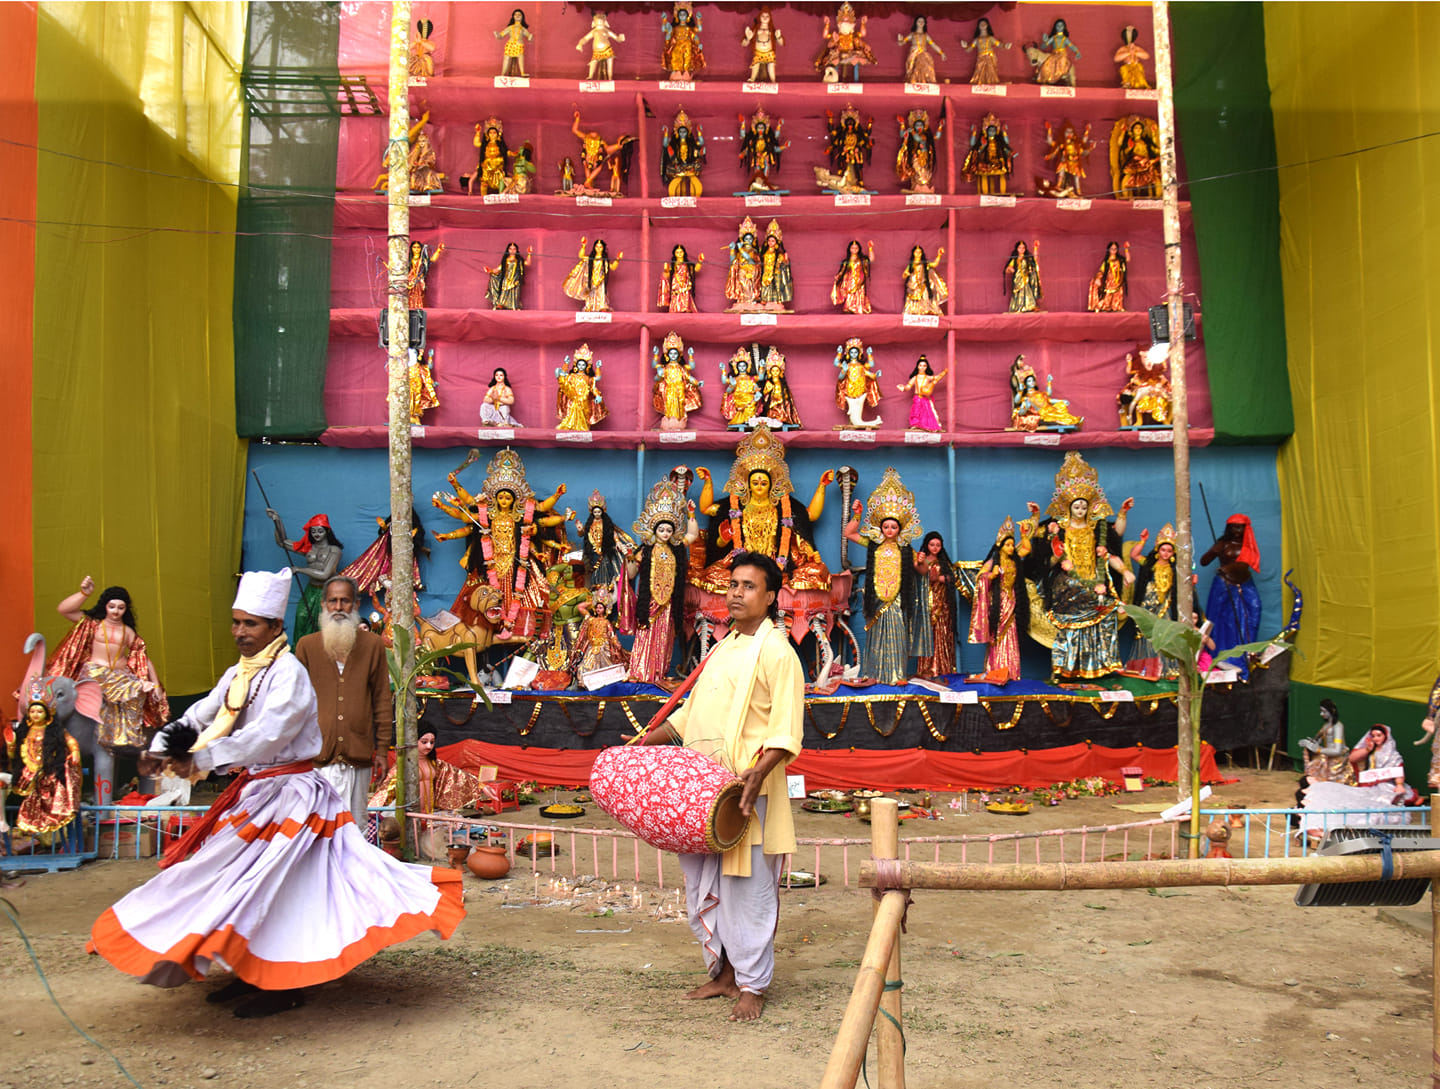 কাছাড়-বরাক উপত্যকার ঐতিহ্যবাহী অনুষ্ঠান 'নৌকাপুজা'-য় ওঝার নৃত্য । ছবিঃ নিজস্ব সংগ্রহ থেকে।